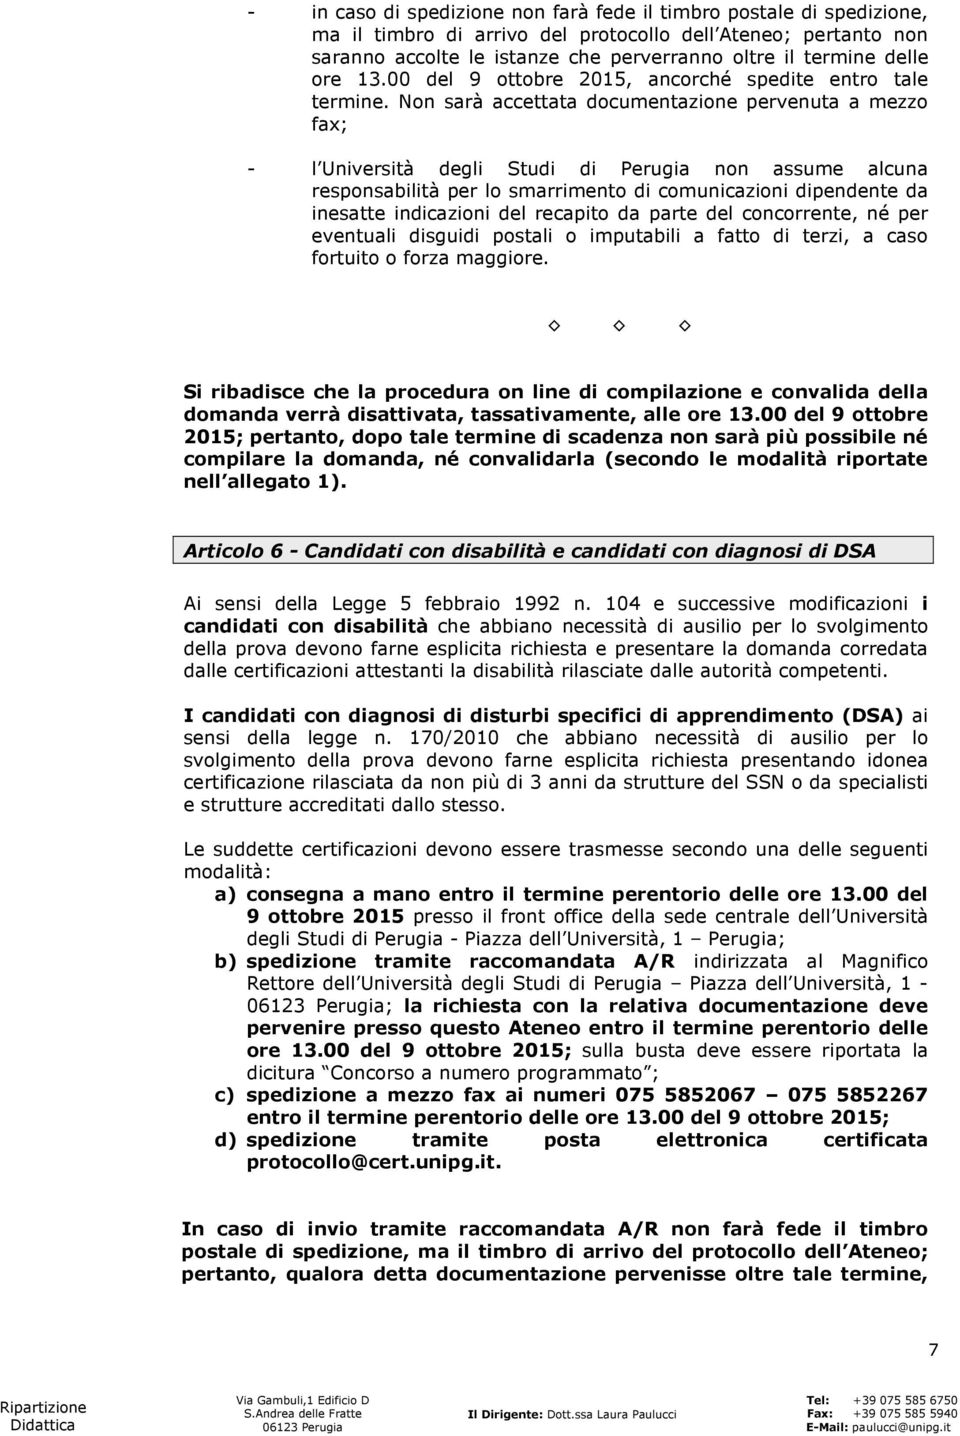 Non sarà accettata documentazione pervenuta a mezzo fax; - l Università degli Studi di Perugia non assume alcuna responsabilità per lo smarrimento di comunicazioni dipendente da inesatte indicazioni